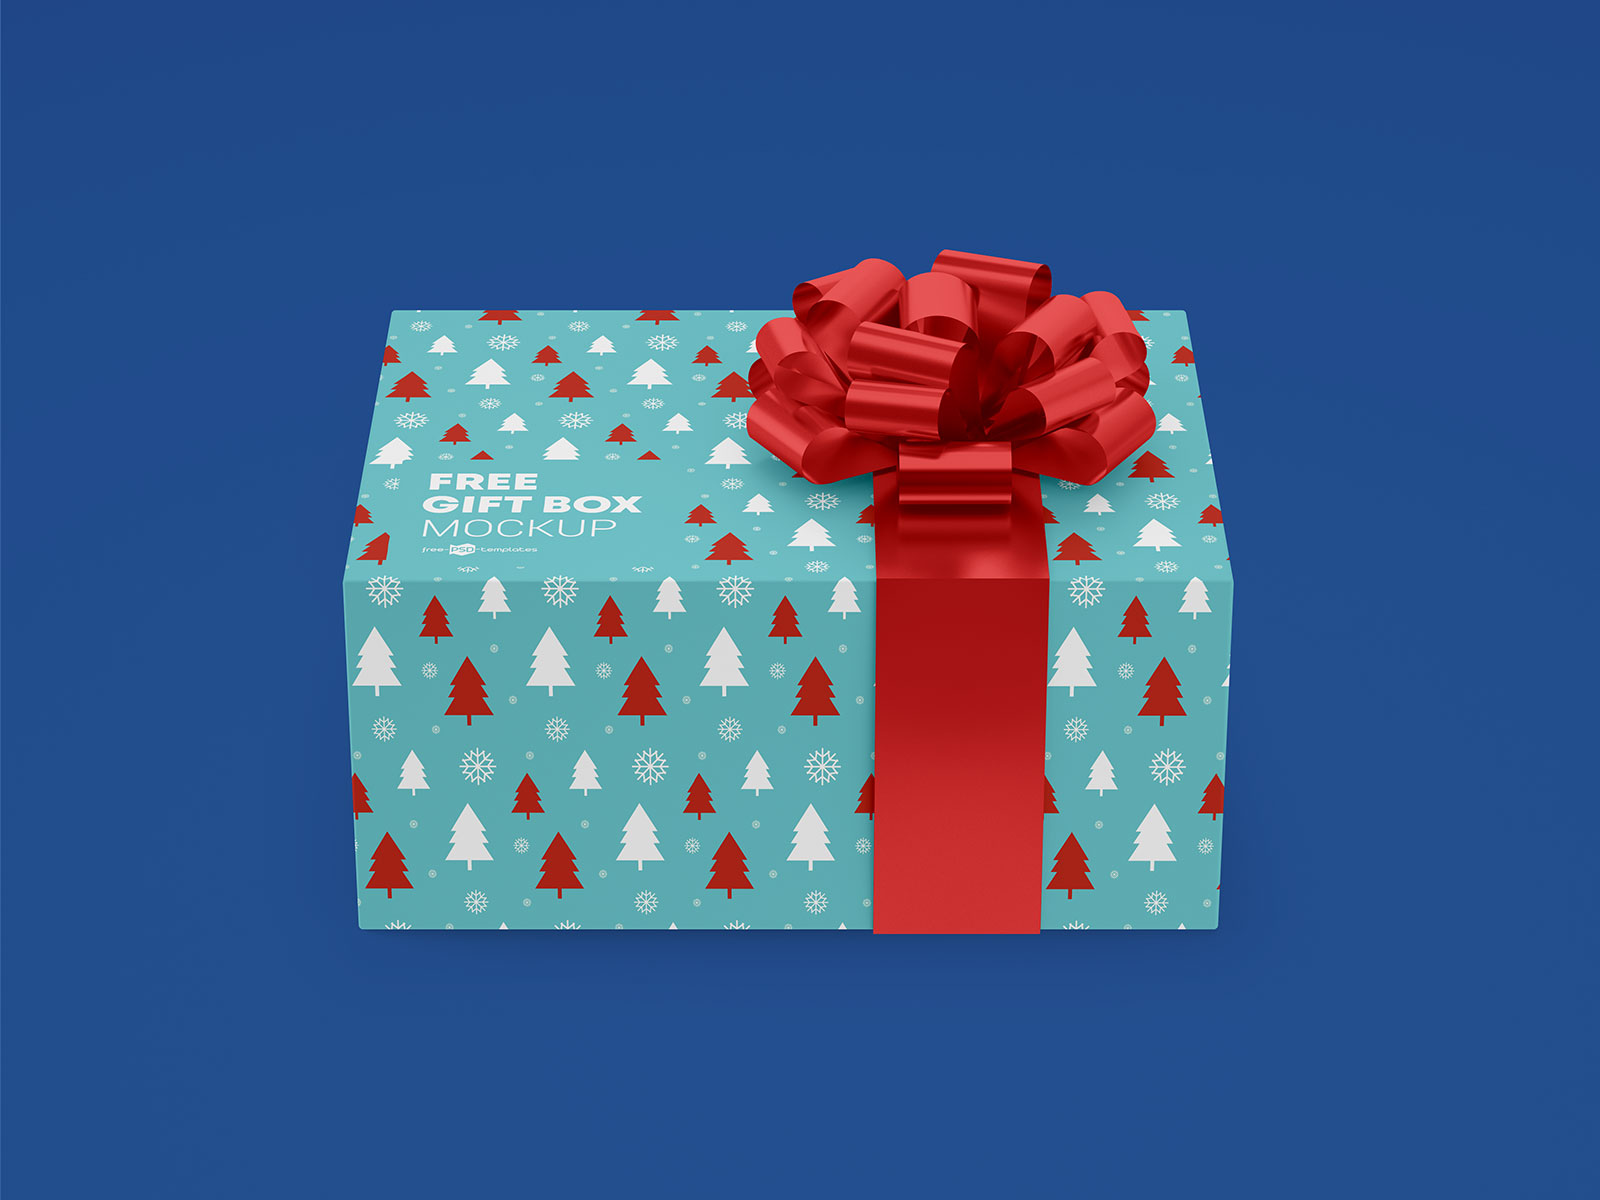 Free-Gift-Box-Packaging-Mockup-PSD-Set